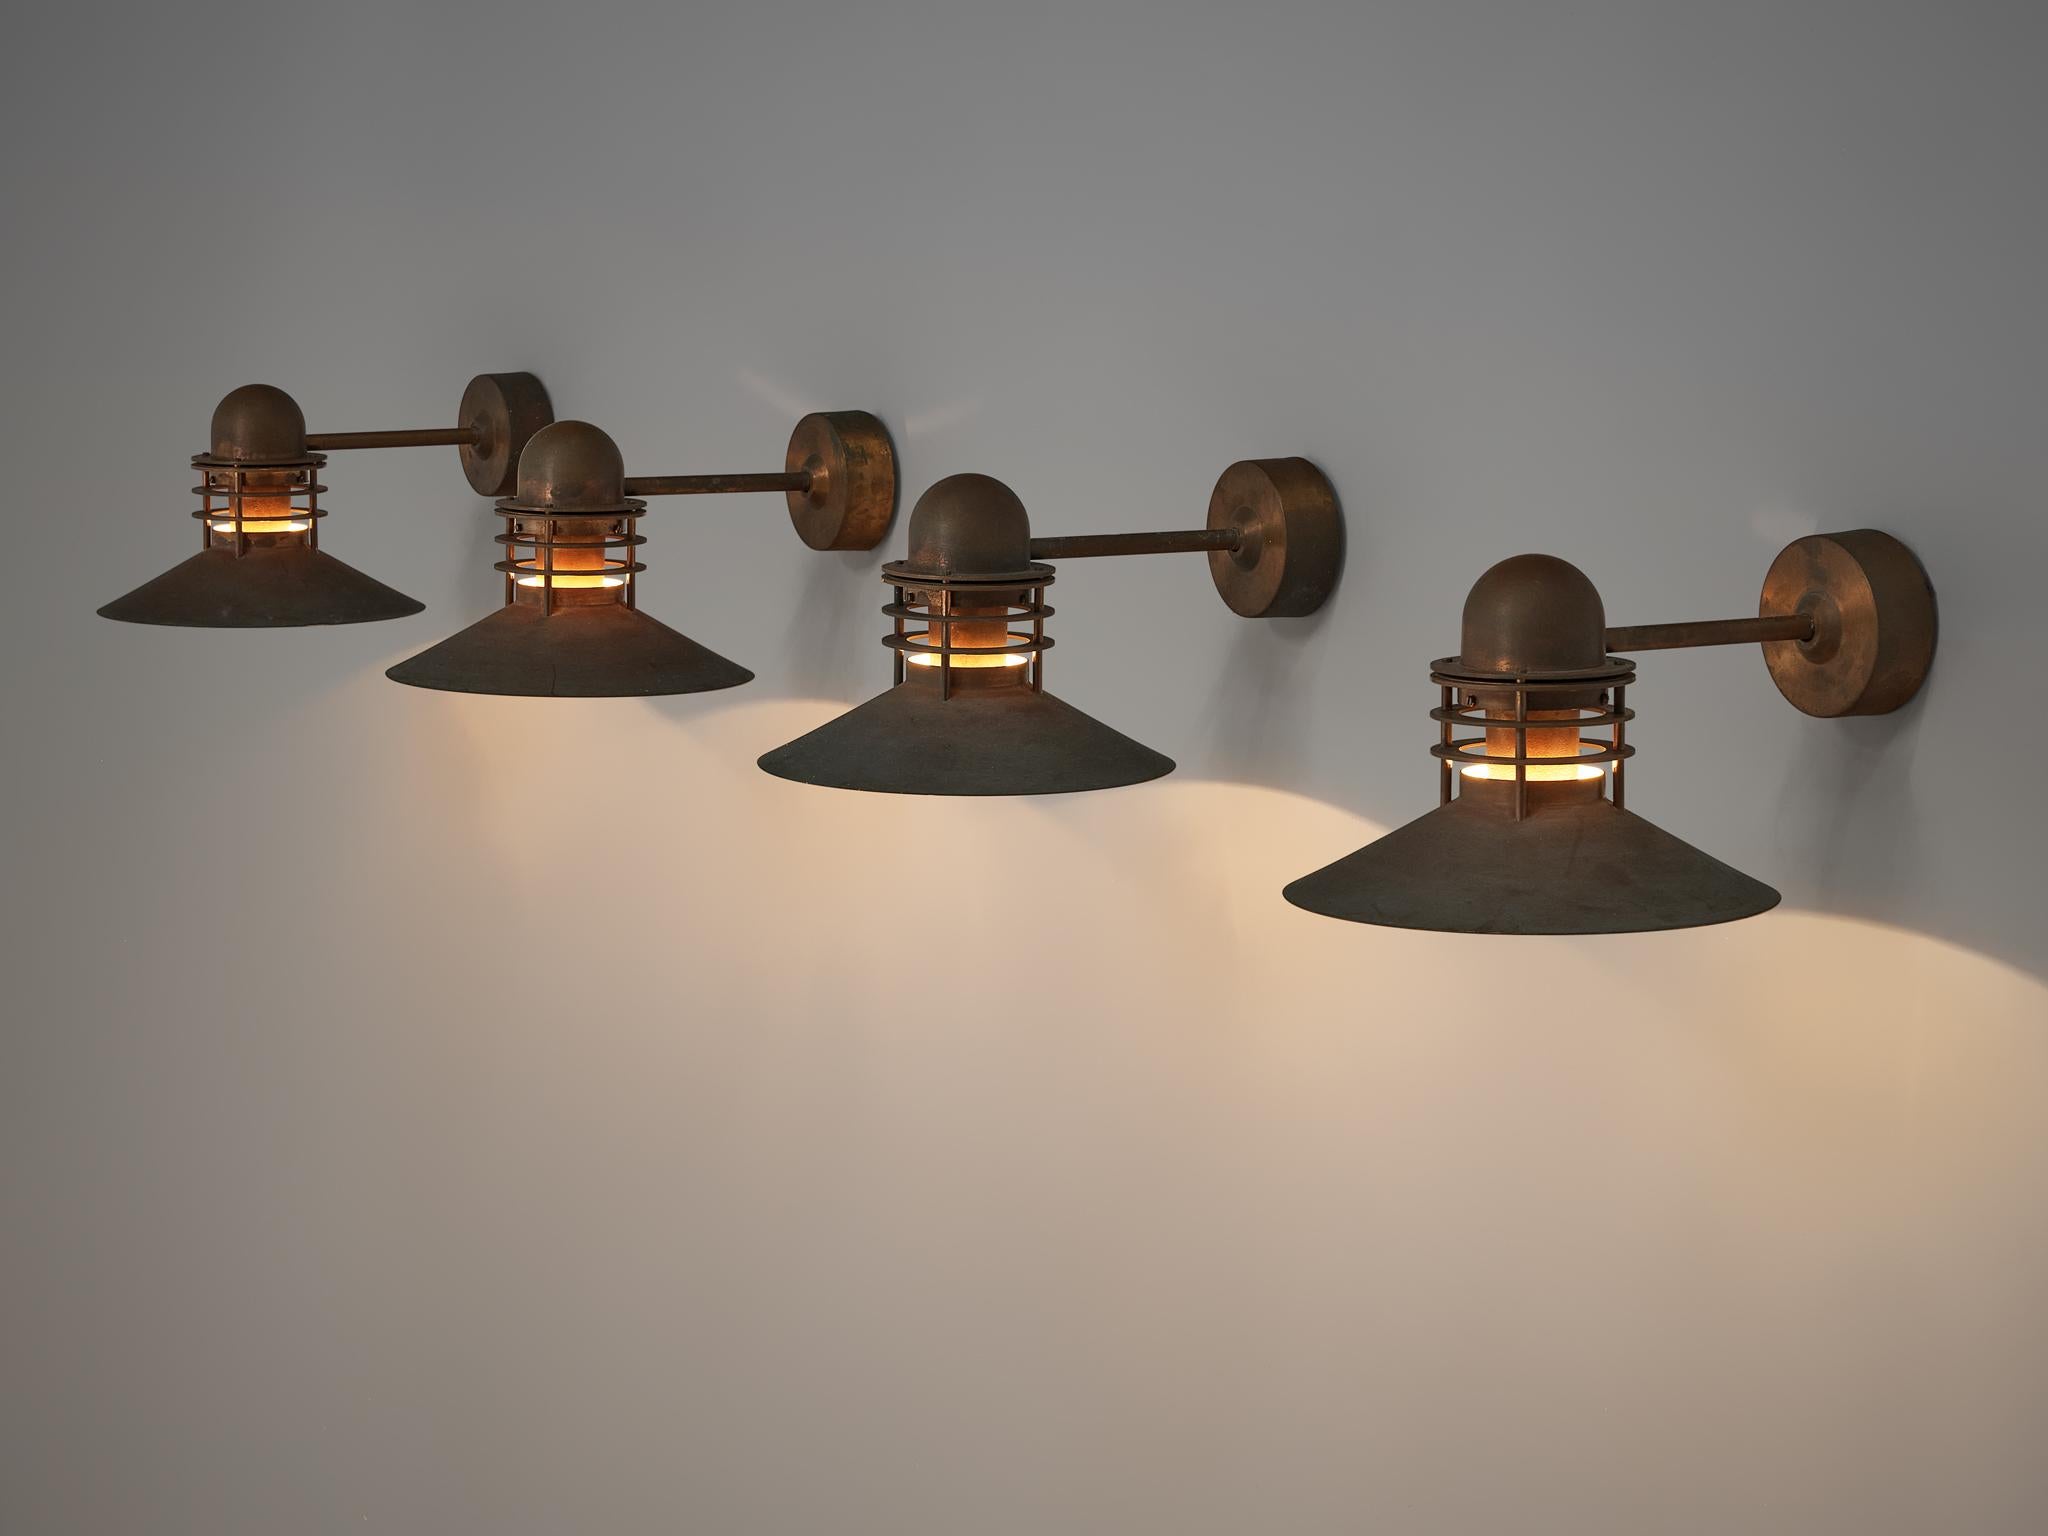 Homann & Kjær for Louis Poulson Wall Lamps ‘Nyhavn’ in Copper 2